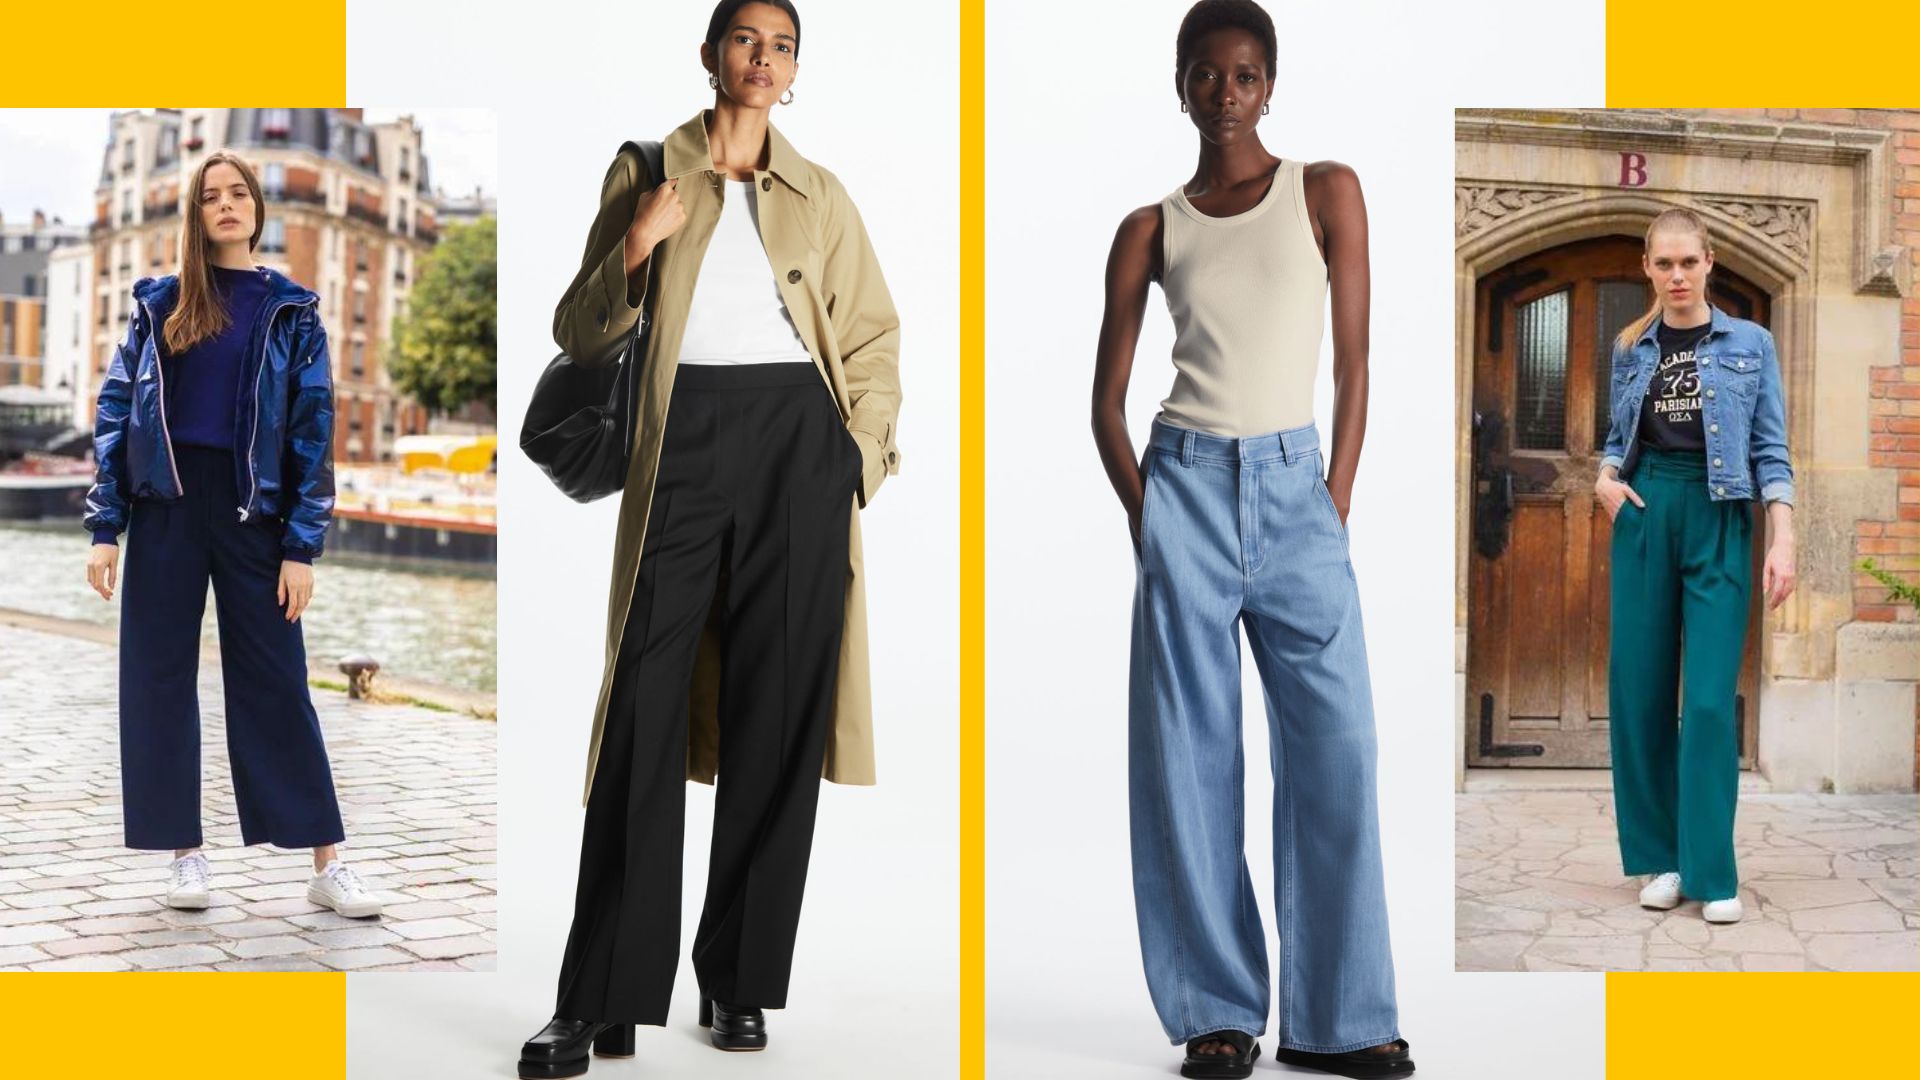 Comment porter le pantalon large + idées outfits - STYLISTE POUR EMPORTER